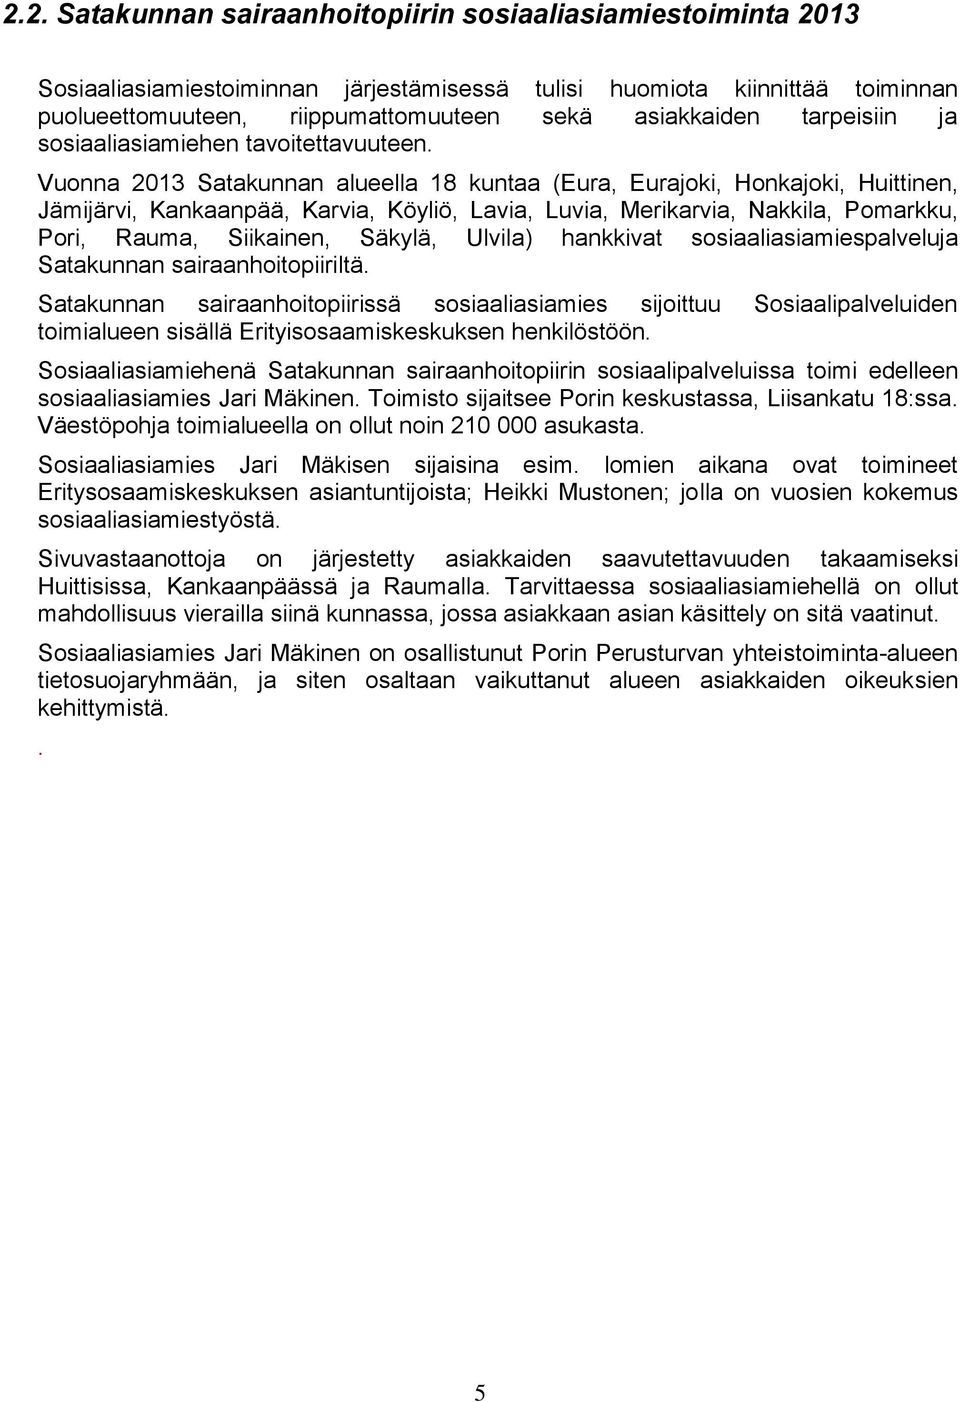 Vuonna 2013 Satakunnan alueella 18 kuntaa (Eura, Eurajoki, Honkajoki, Huittinen, Jämijärvi, Kankaanpää, Karvia, Köyliö, Lavia, Luvia, Merikarvia, Nakkila, Pomarkku, Pori, Rauma, Siikainen, Säkylä,